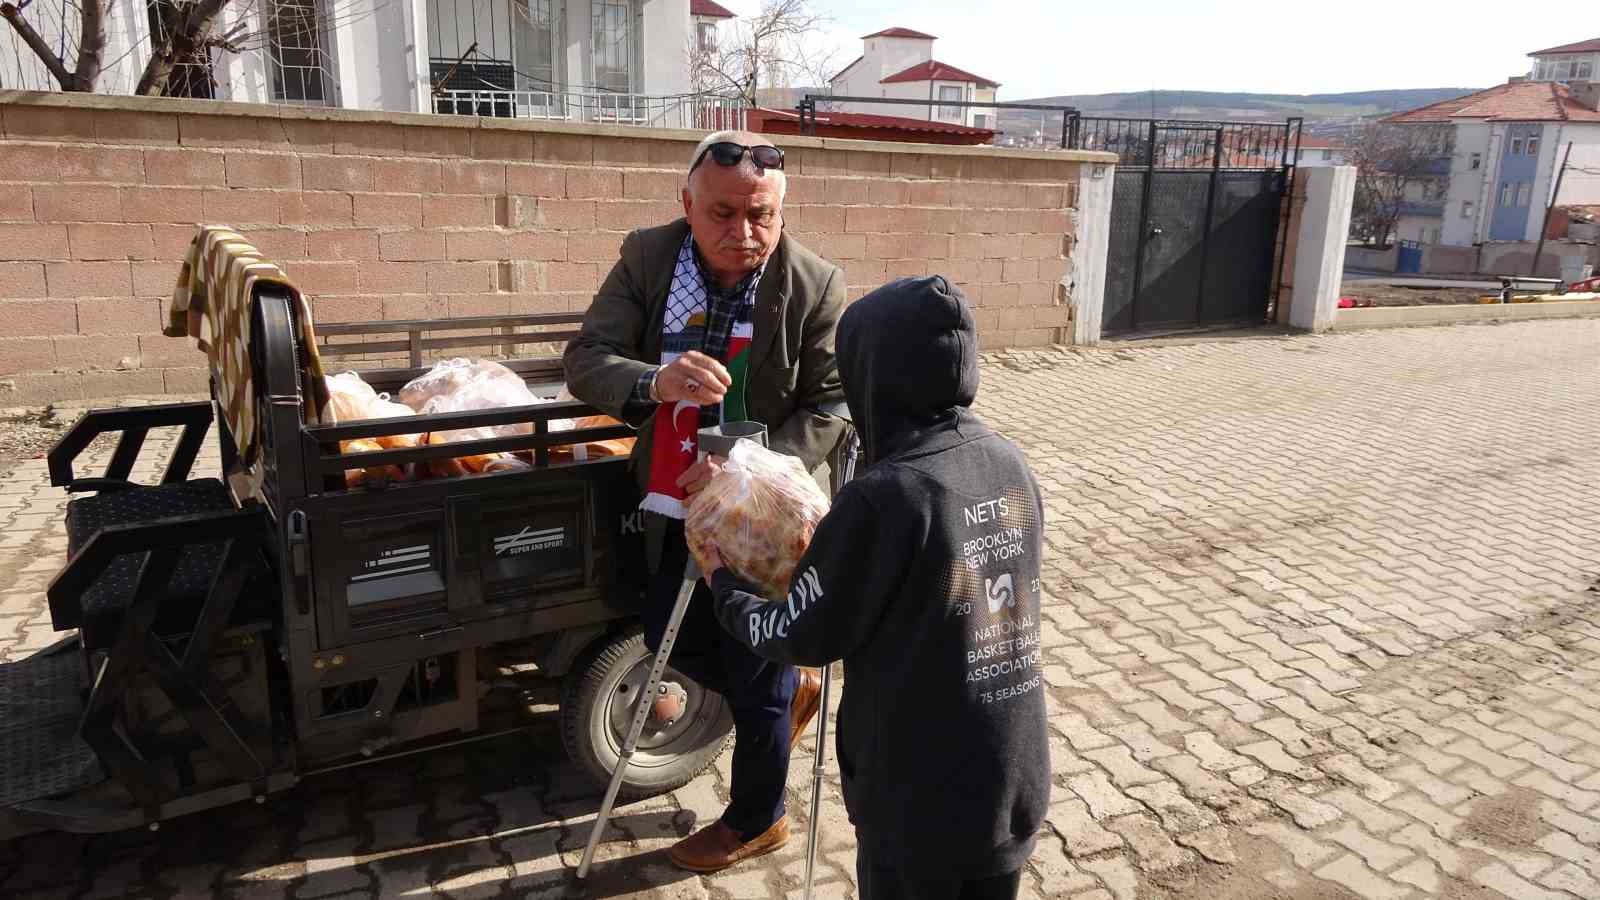 Engelli aracıyla çıktığı iyilik yolunda her gün ihtiyaç sahiplerine ekmek ve gıda taşıyor
